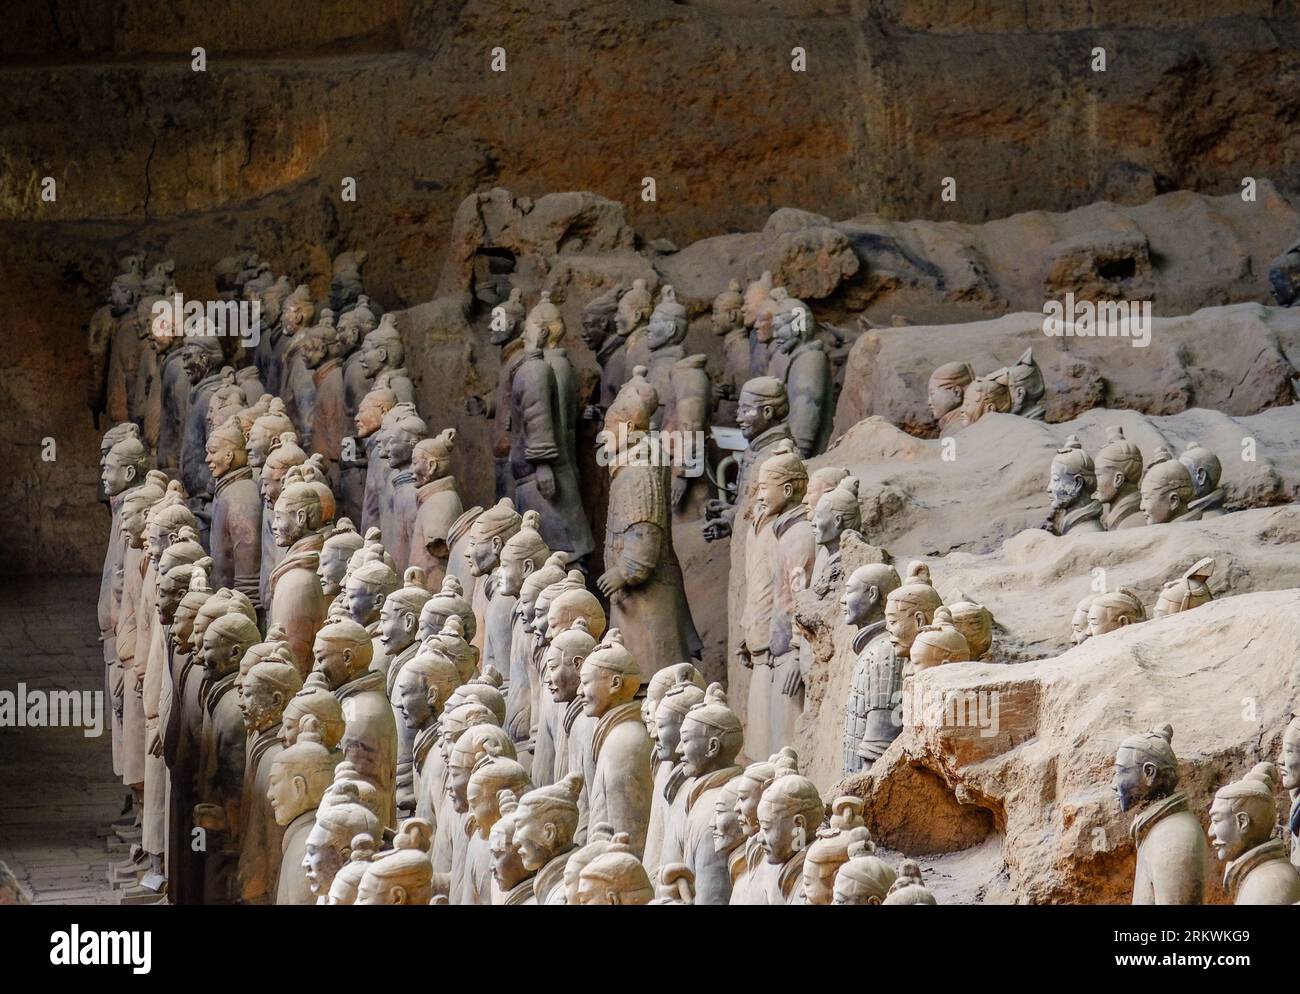 La célèbre armée de terre cuite, qui fait partie du mausolée du premier empereur Qin, et est un site du patrimoine mondial de l'UNESCO situé à Xian, en Chine. Banque D'Images